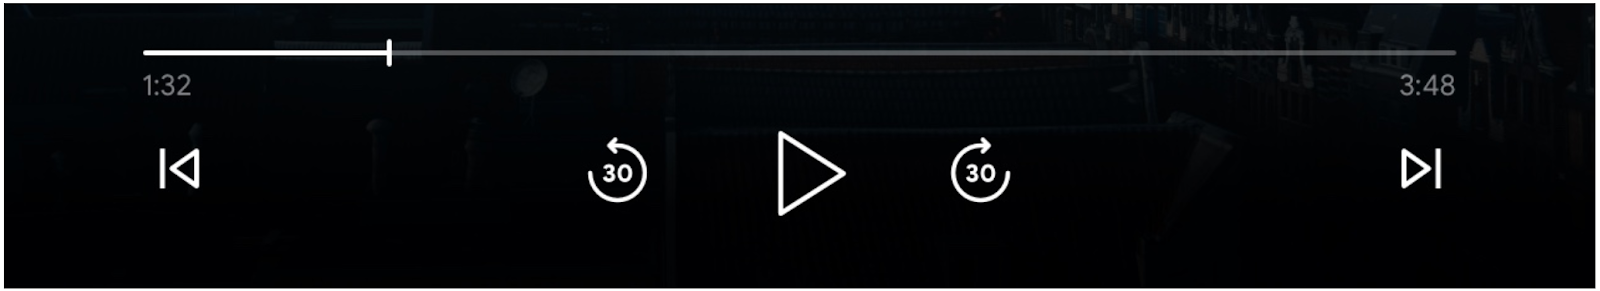 Imagen de los controles del reproductor multimedia: barra de progreso, botón “Reproducir”, botones “Avanzar” y “Saltar hacia atrás”, y los botones “Cola anterior” y “En fila siguiente” habilitados